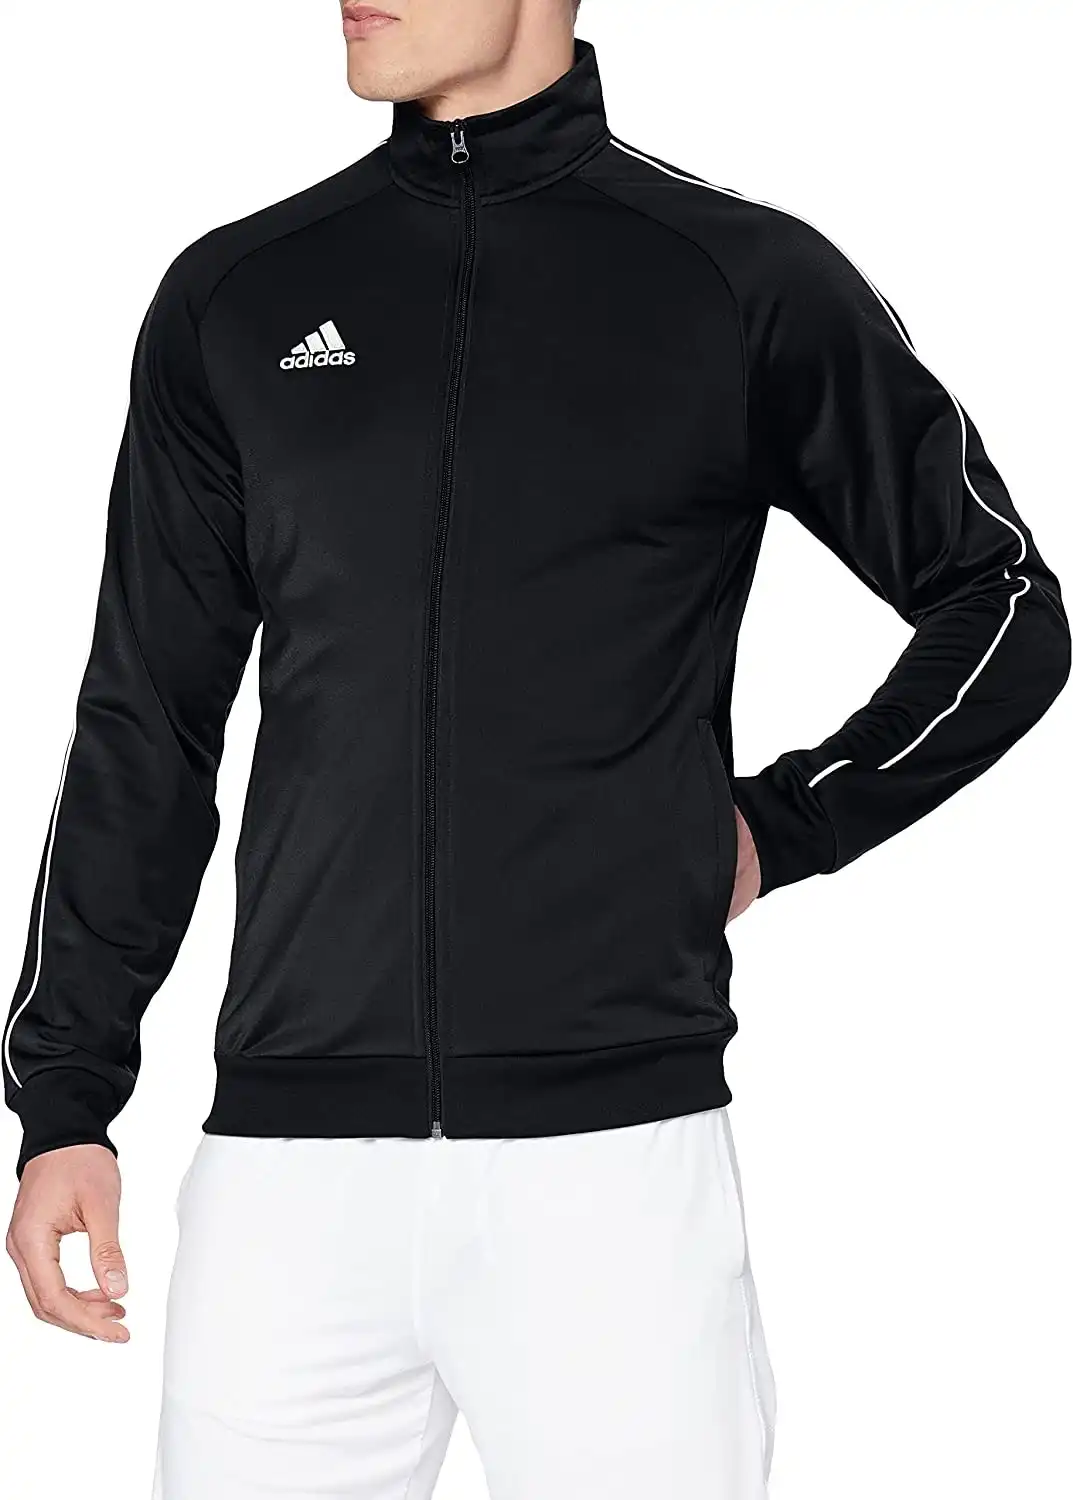 3 x Mens Adidas Core 18 Pes Zip Up Jacket Athletic Training Black/White